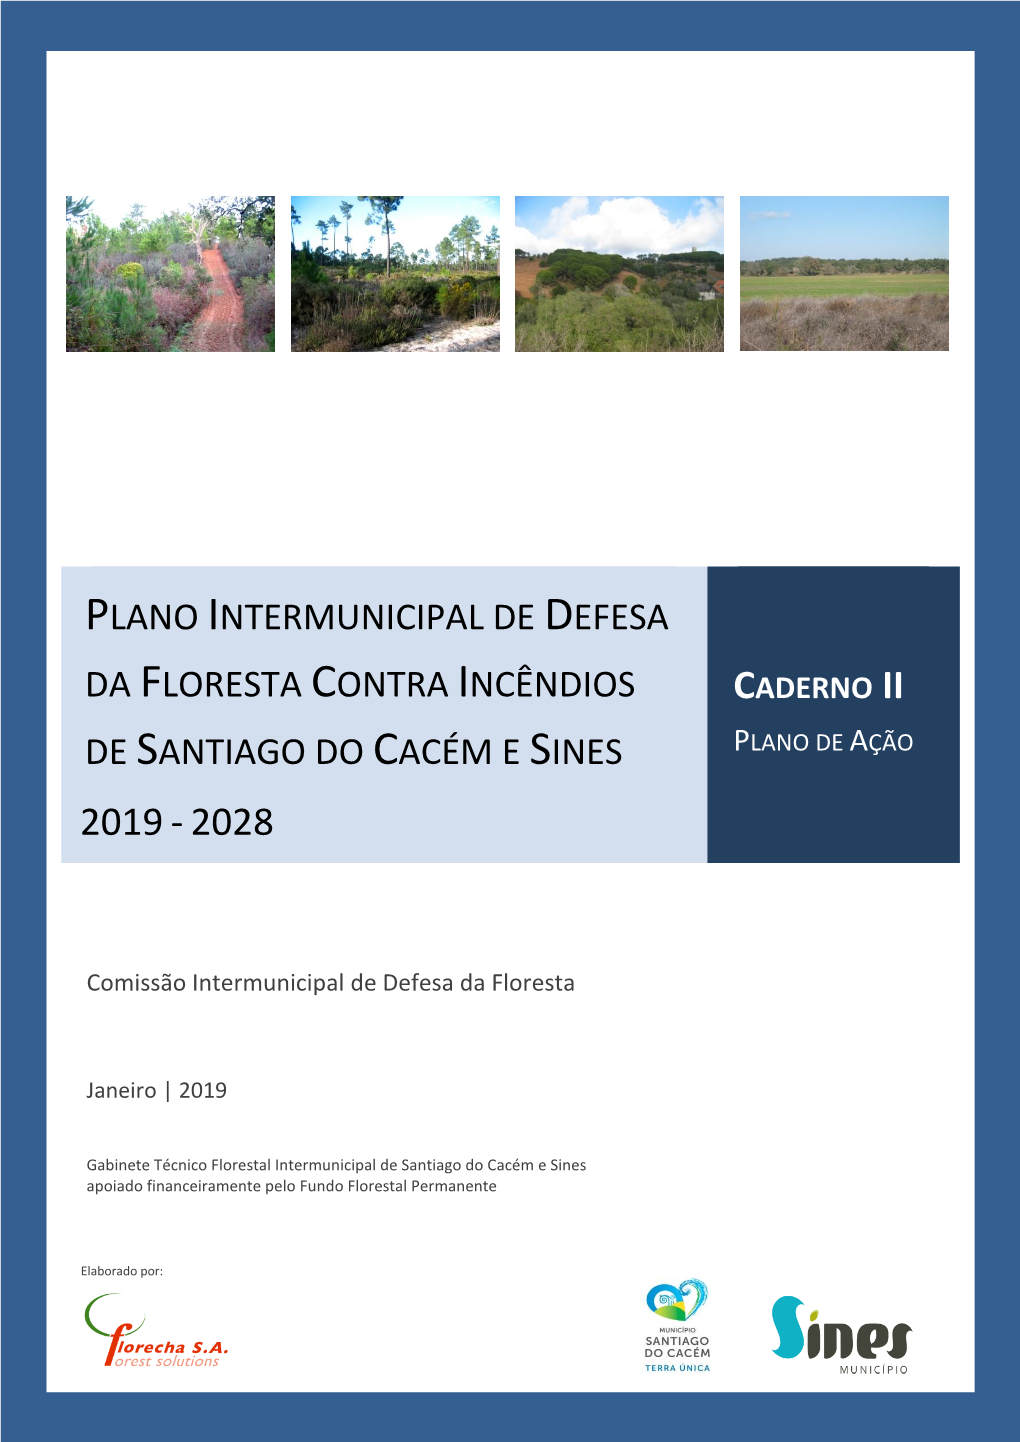 Plano Intermunicipal De Defesa Da Floresta Contra Incêndios Caderno Ii De Santiago Do Cacém E Sines Plano De Ação 2019 - 2028